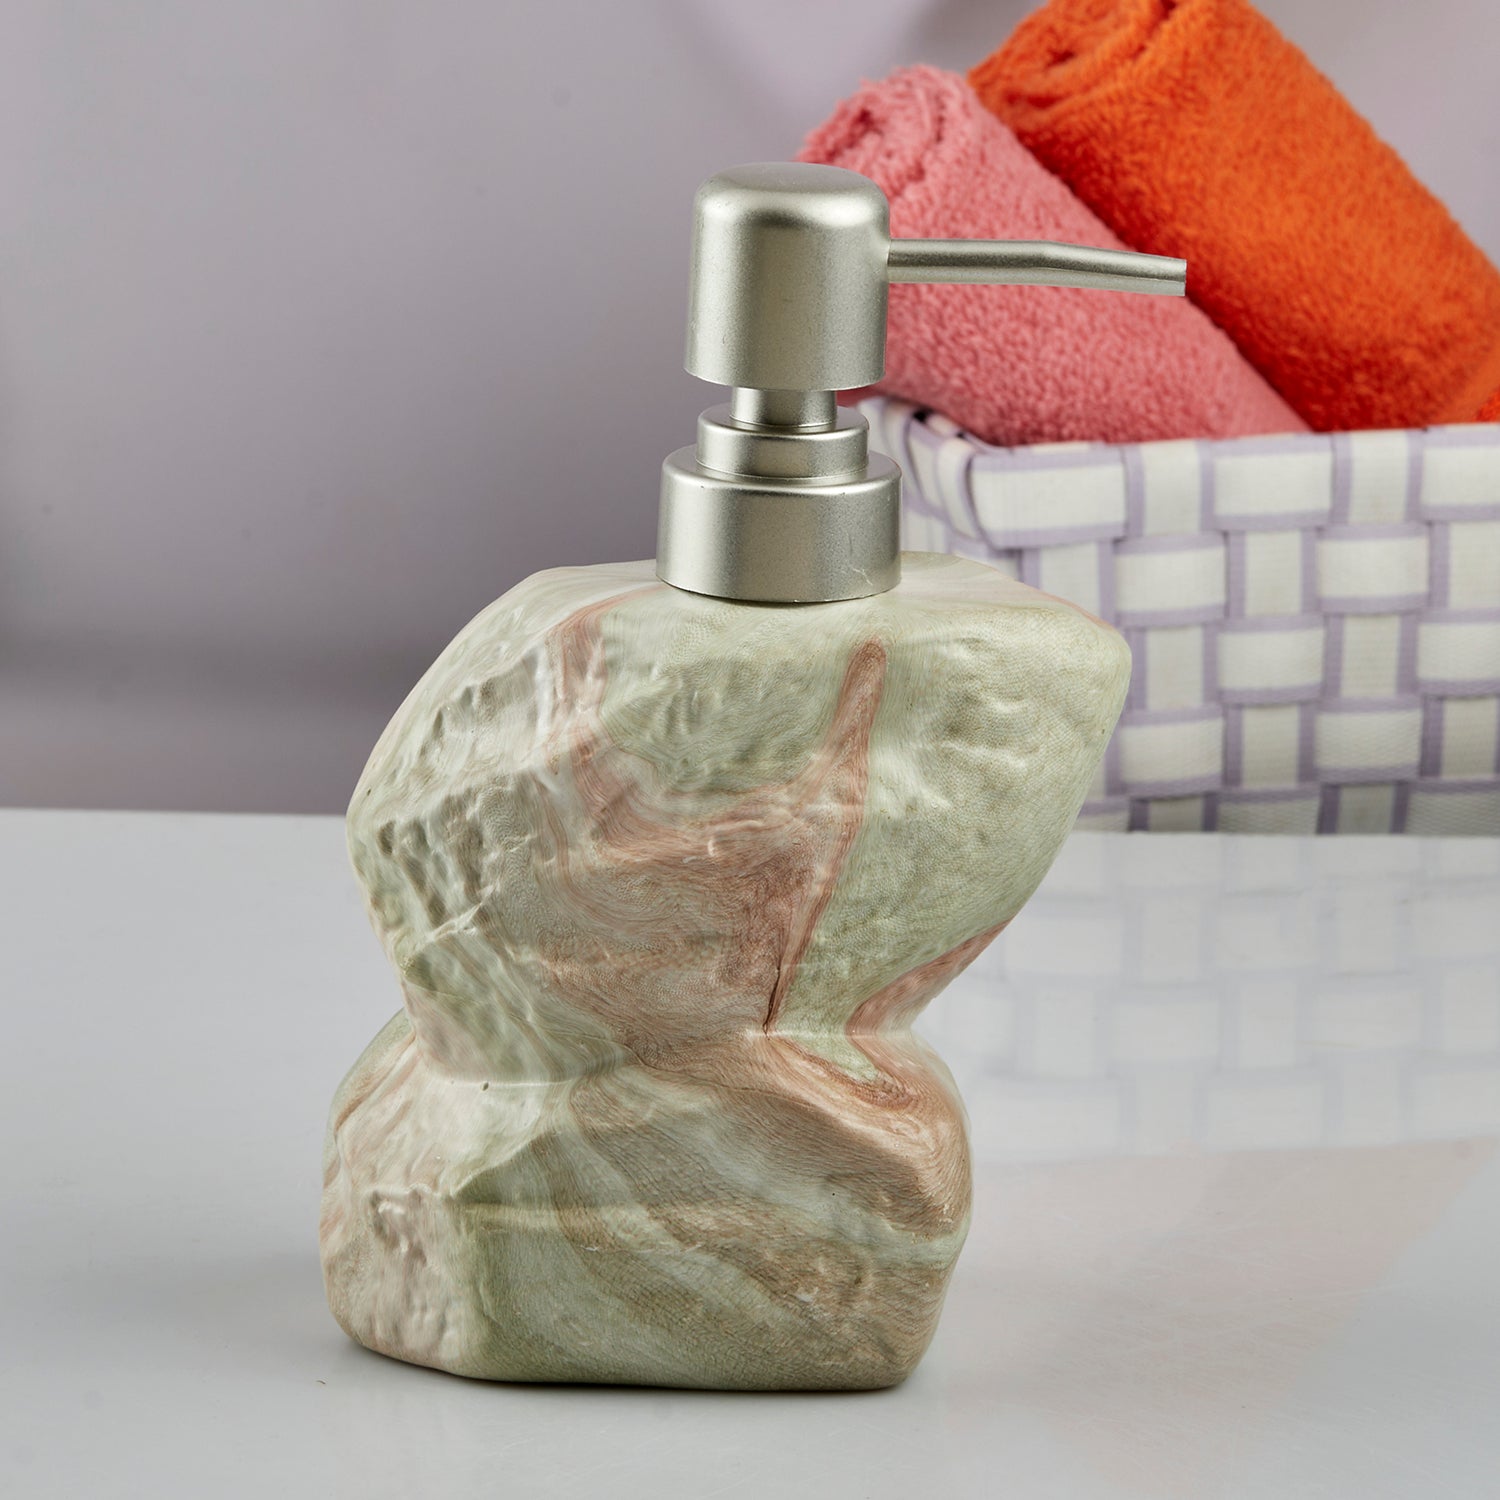 Ceramic Soap Dispenser liquid handwash pump for Bathroom, Set of 1, Green (7621)